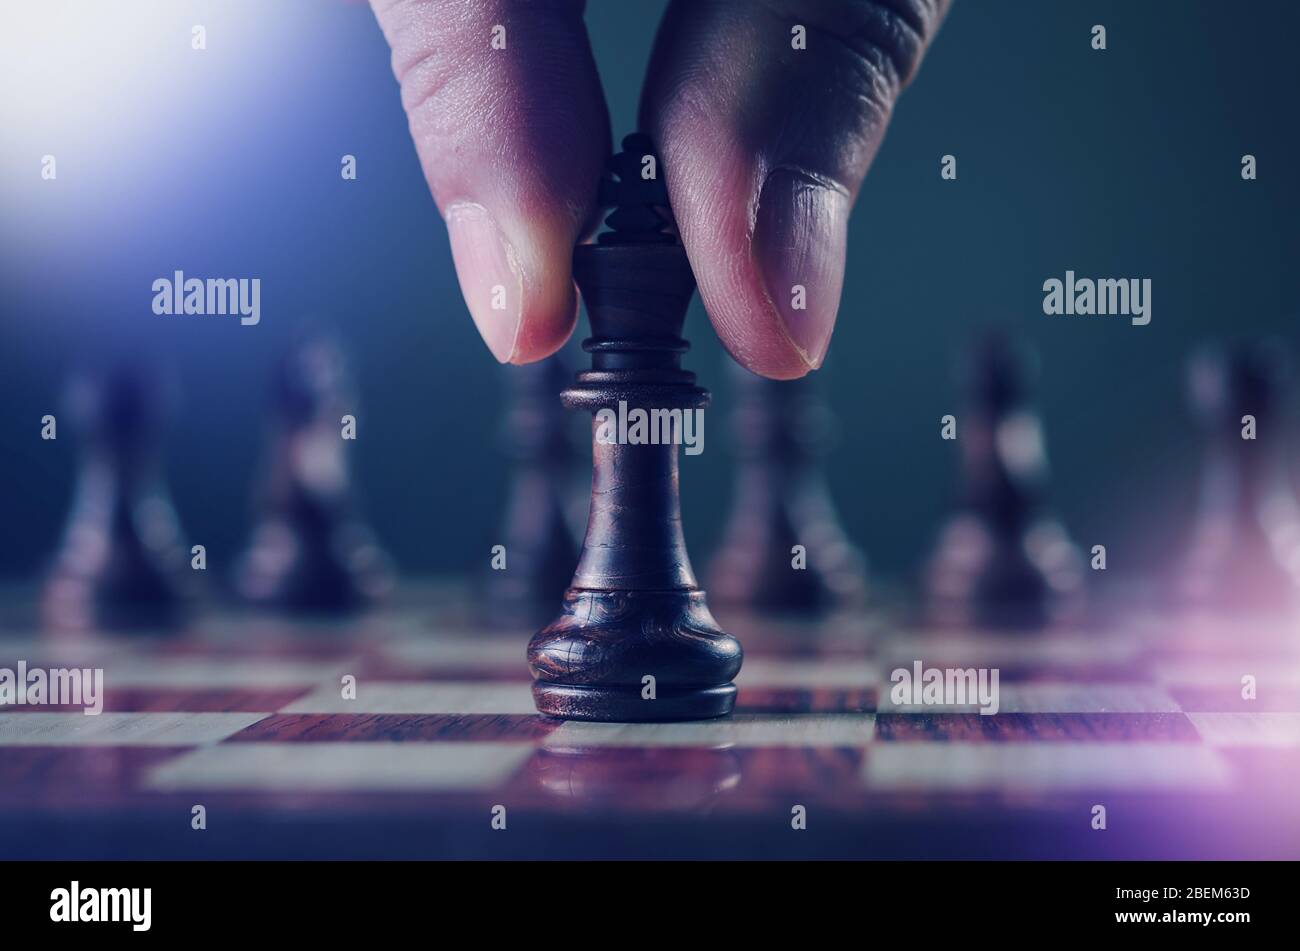 Strategie und Planung Konzept, Nahaufnahme der menschlichen Hand beim Halten oder Bewegen König Schachfigur in kühlen Farbton und Licht Leck-Effekt Stockfoto